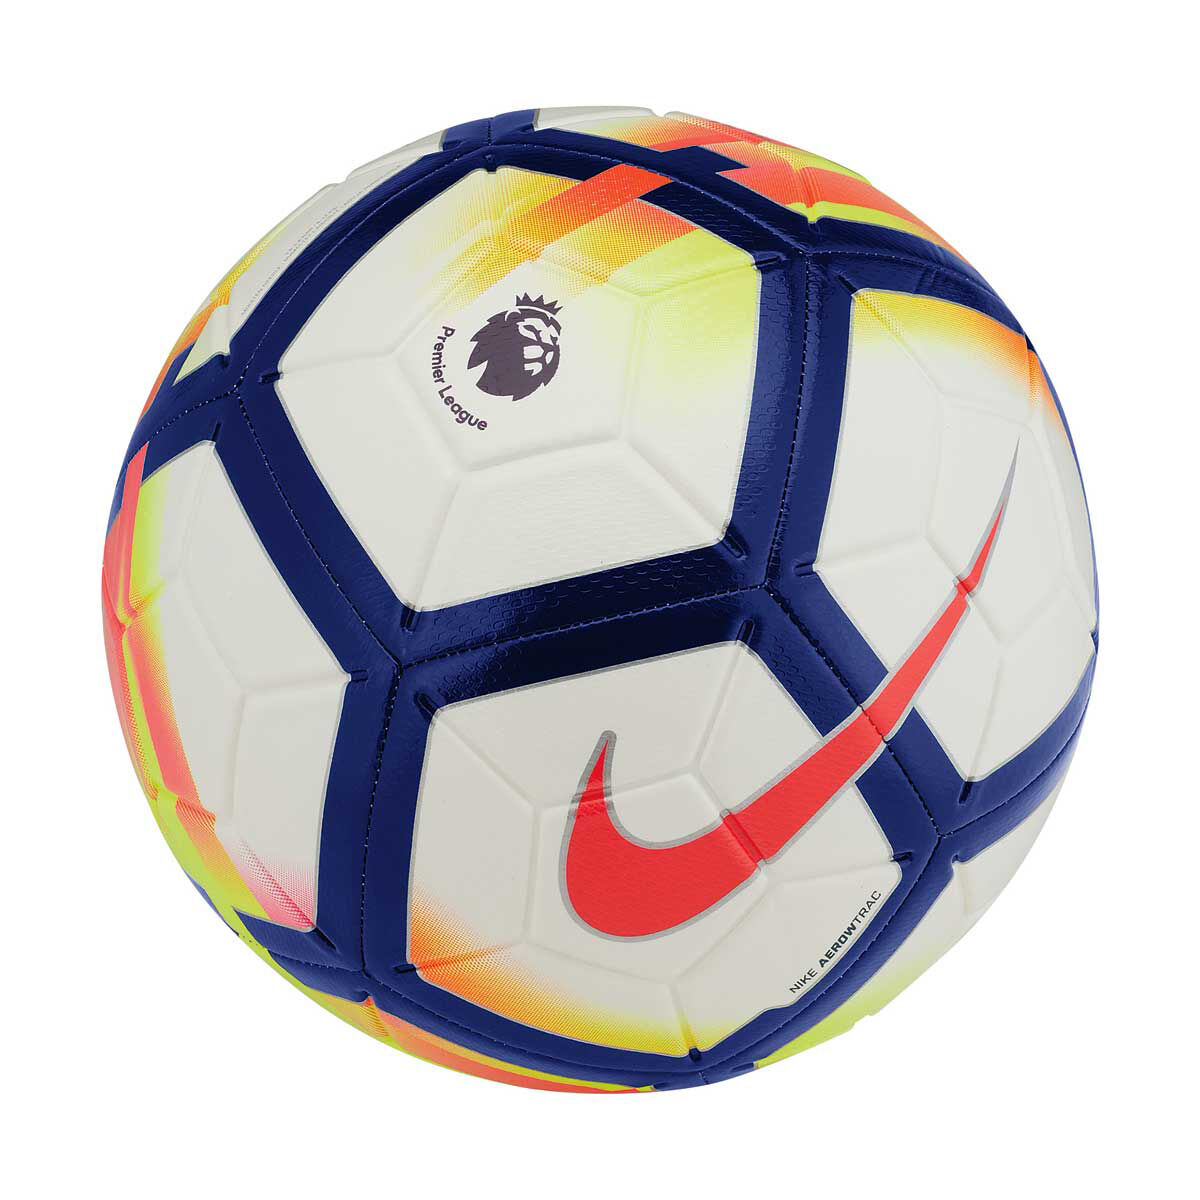 premier league soccer ball size 4